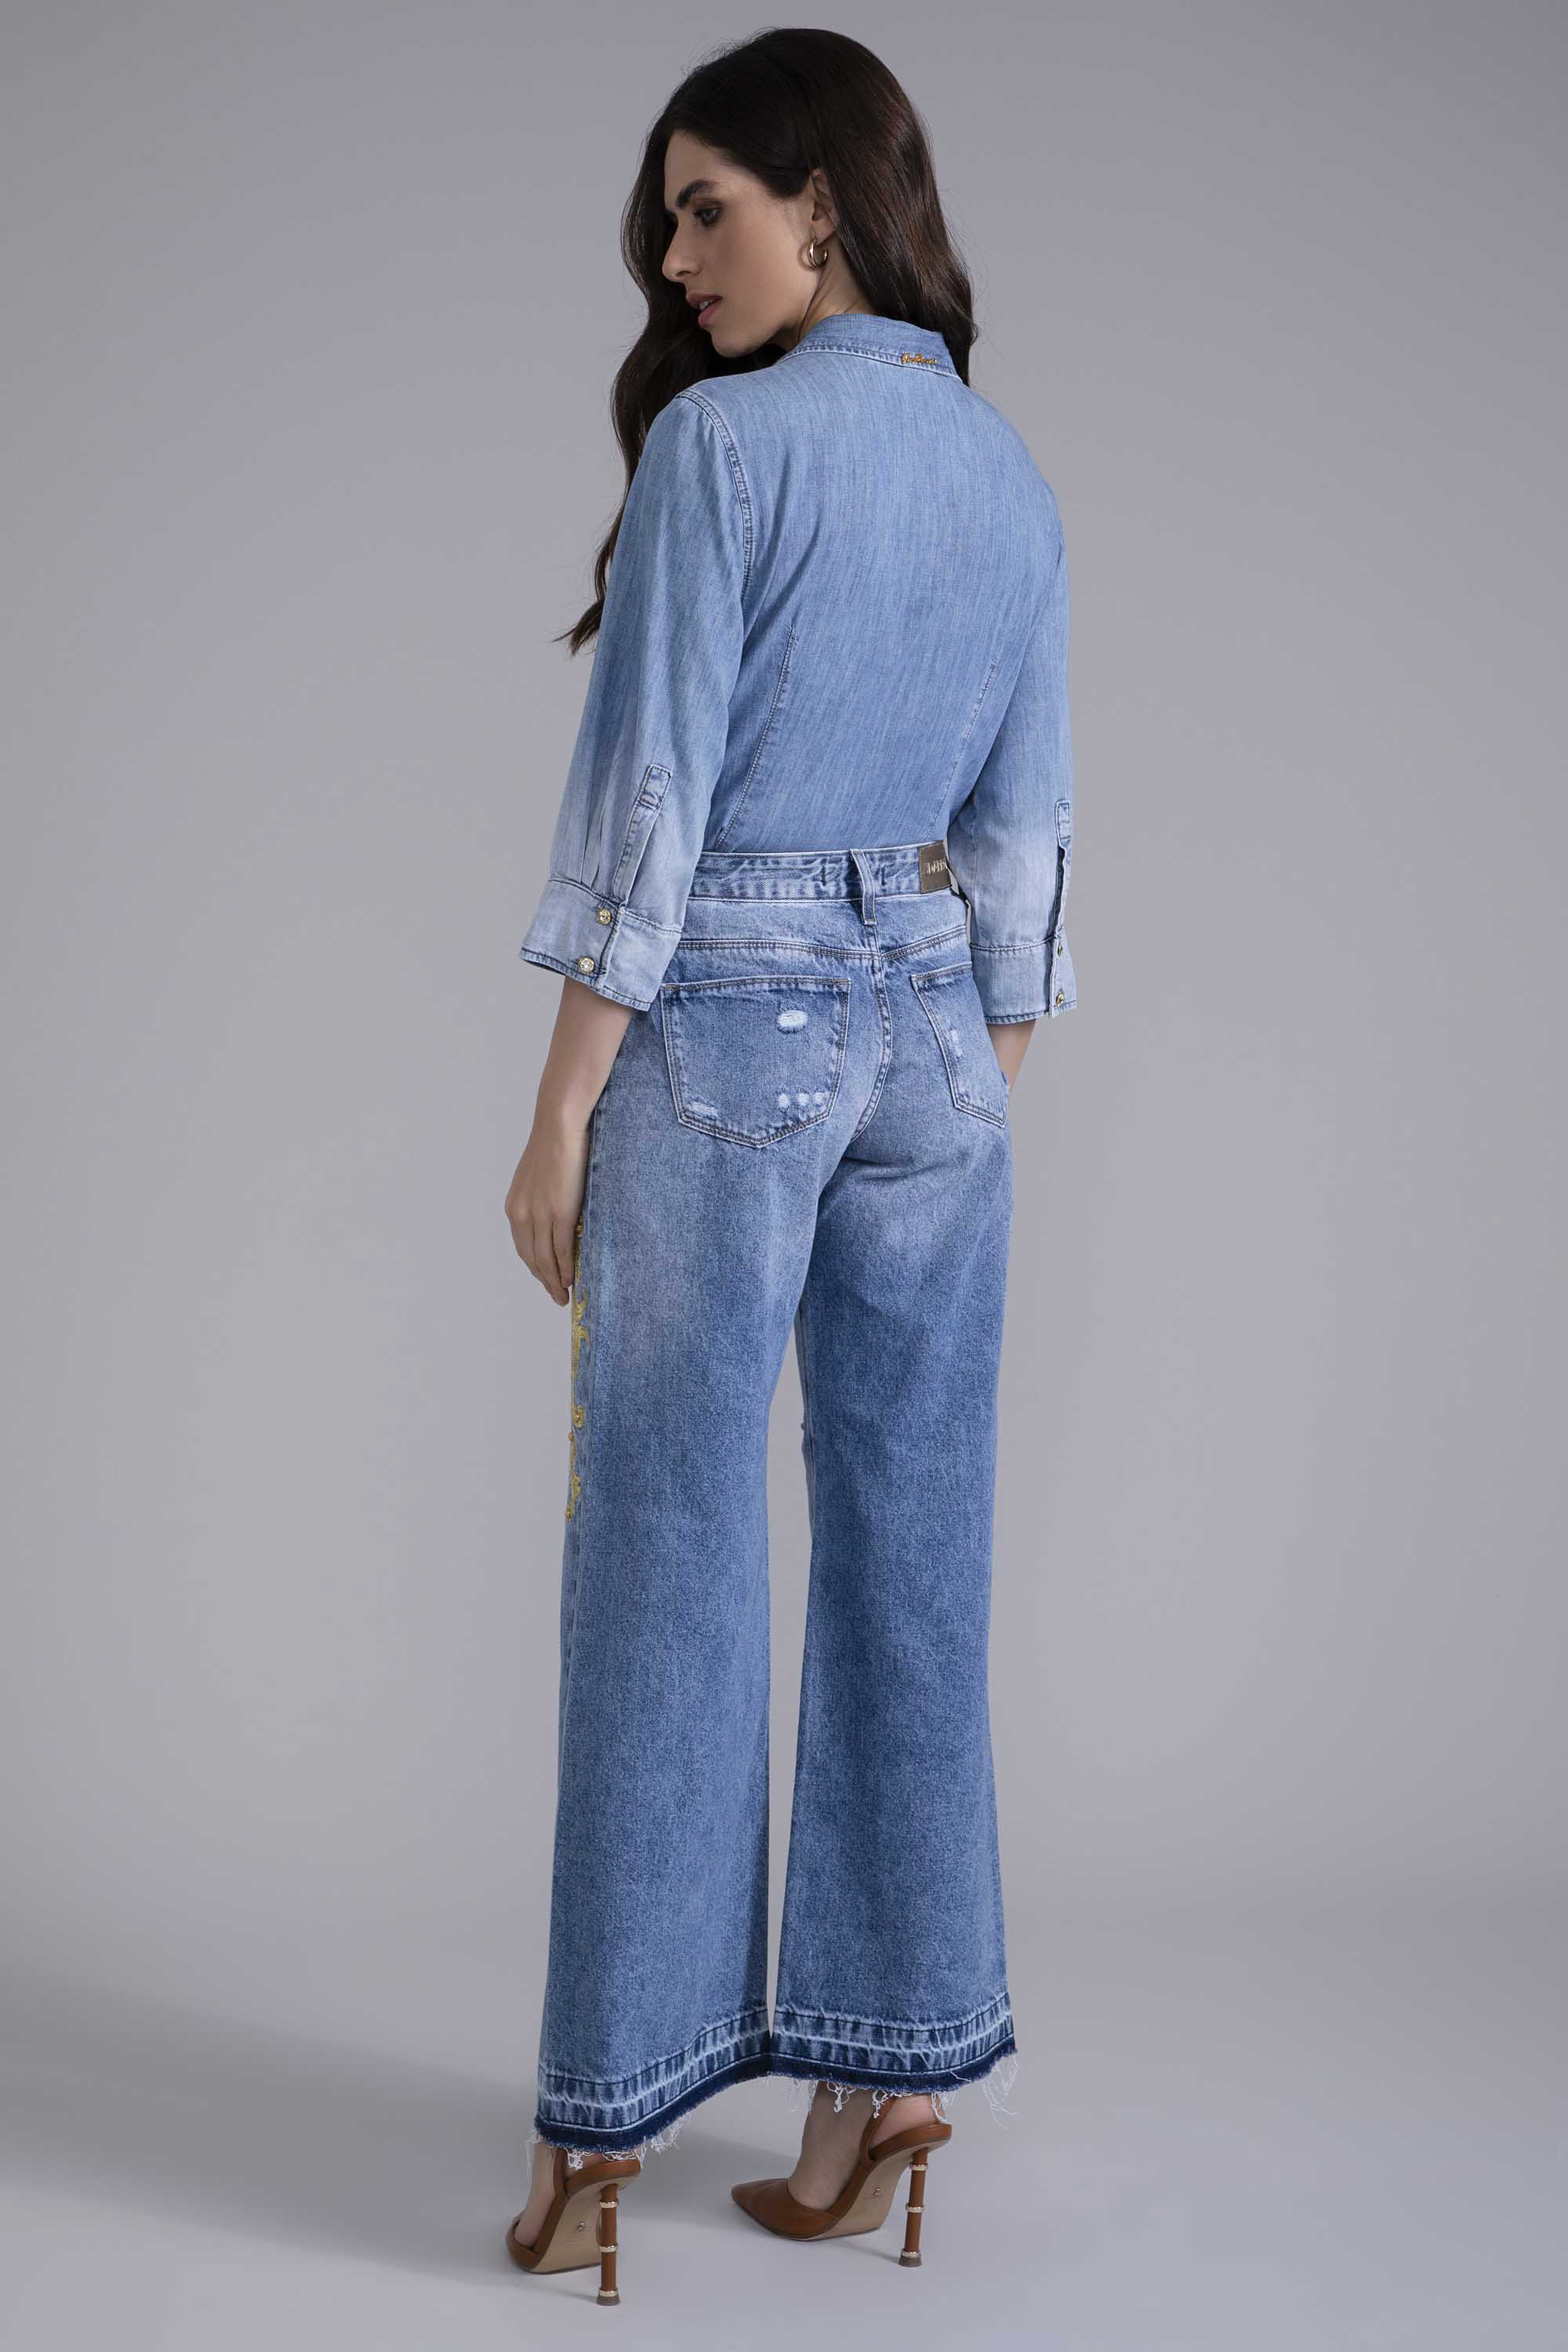 Camisa manga 3/4 tons de jeans, blusa feminina, moda social, moda  evangelica - R$ 65.99, cor Cinza #96261, compre agora